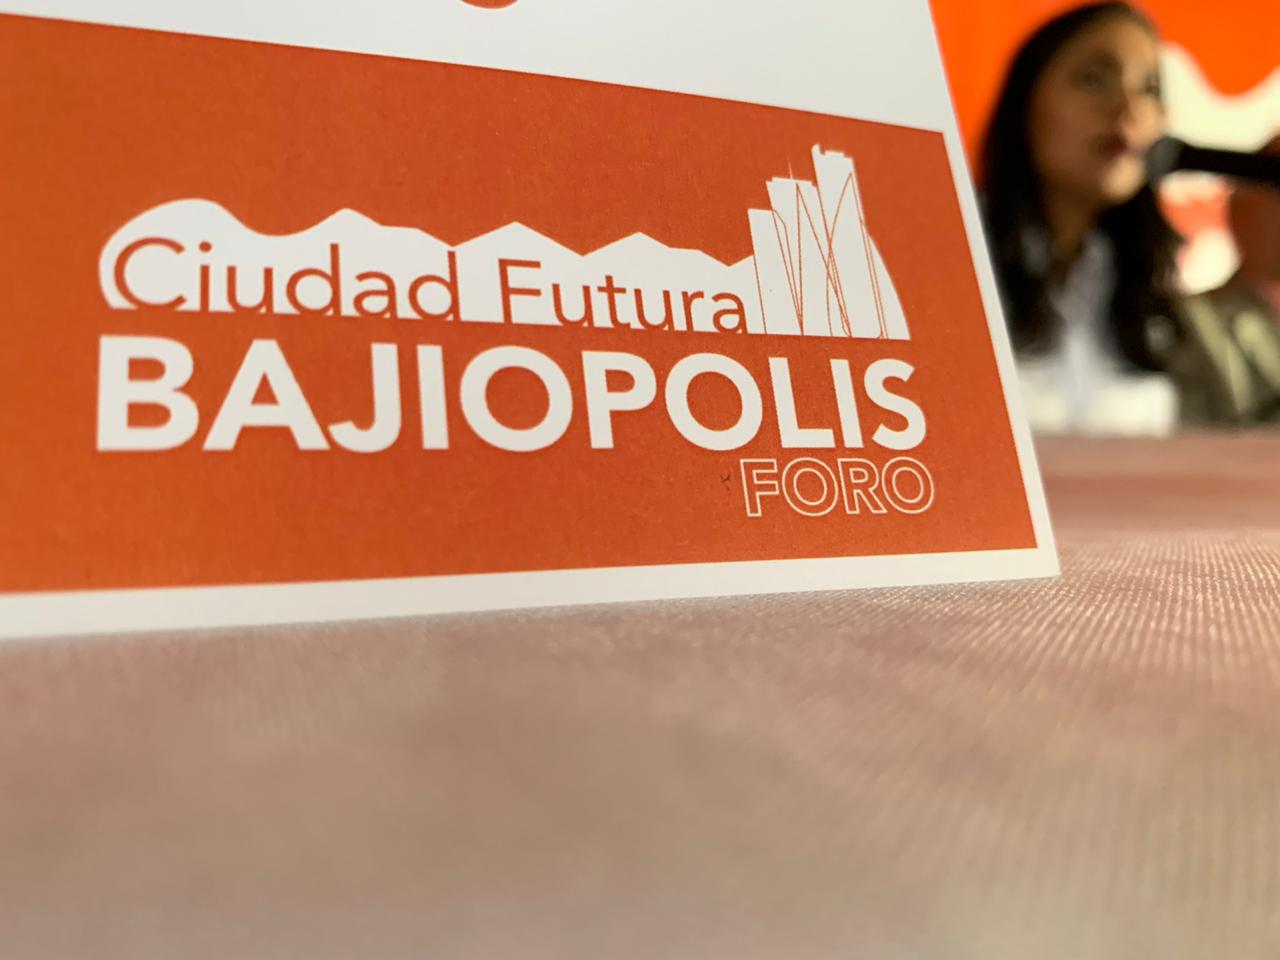 Arquitectos de Silao invitan a Foro “Ciudad Futura- Bajíopolis”